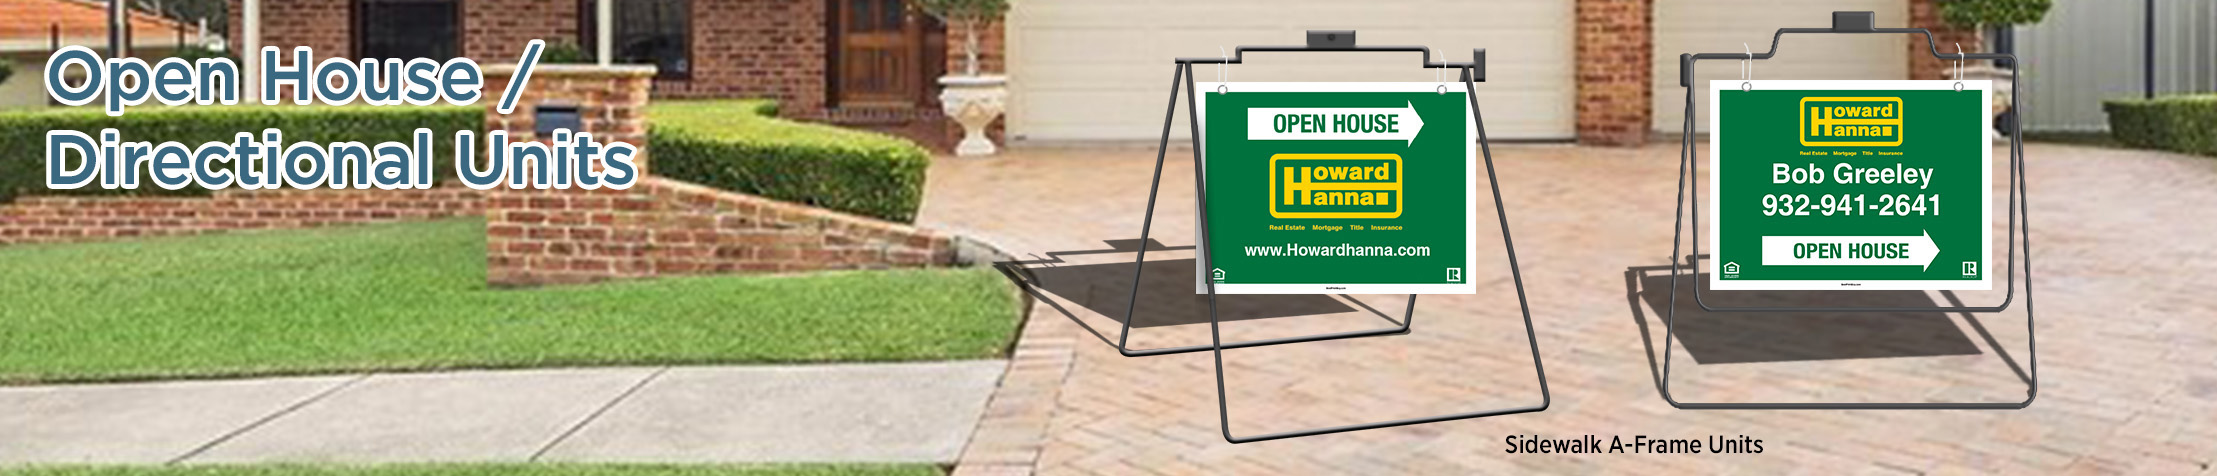 Howard Hanna Real Estate Open House/Directional Units - real estate Sidewalk A-Frame signs | BestPrintBuy.com